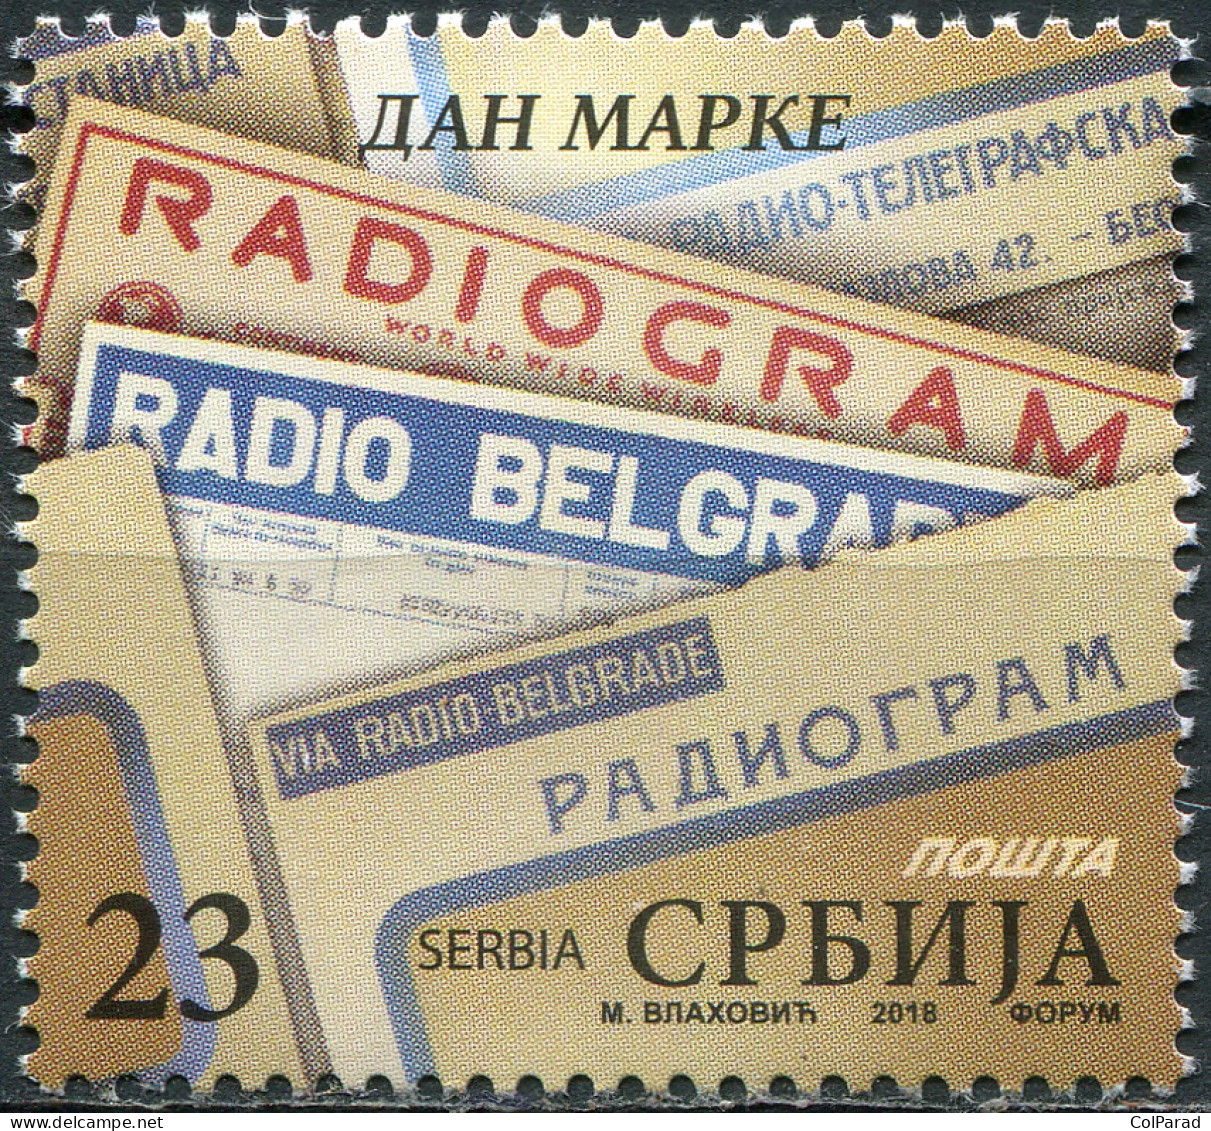 SERBIA - 2018 - STAMP MNH ** - Stamp Day - Serbien